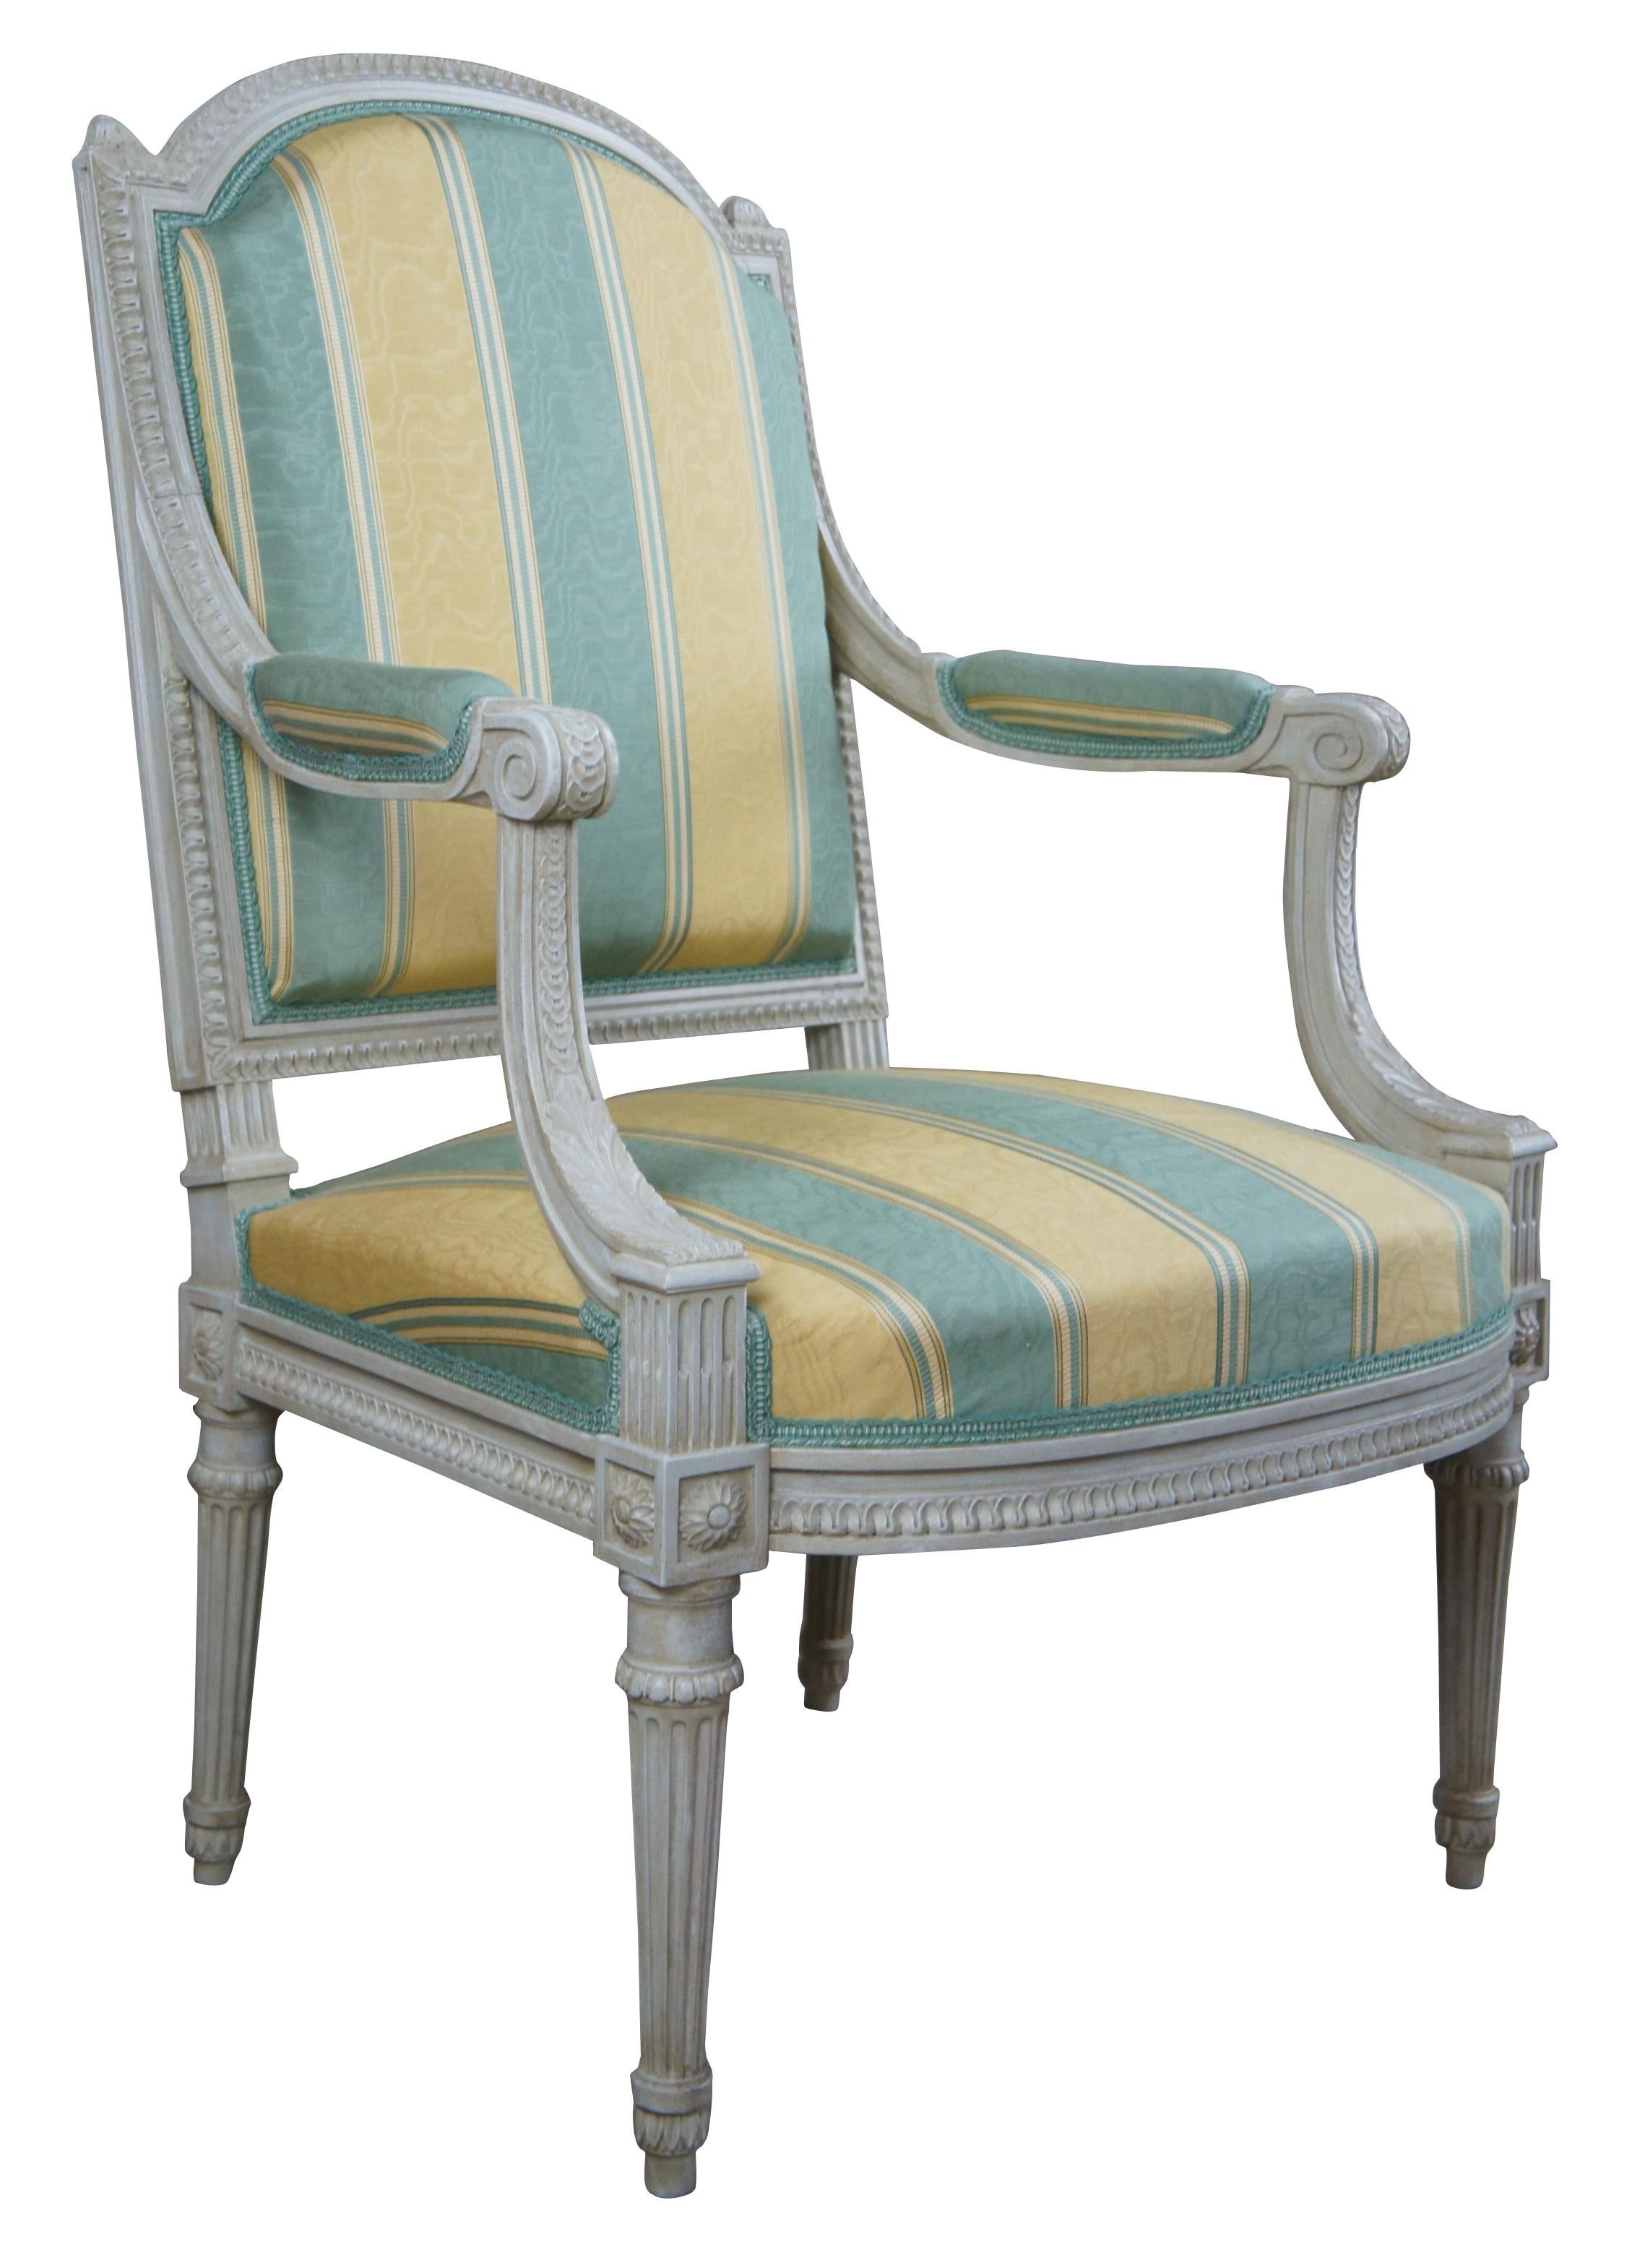 Vintage Baker Furniture Louis XVI / French Provincial Feuteuil Sessel mit Tulpen und Akanthus Akzente, eine gewölbte Rückenlehne mit Kreuzblumen, gepolsterte Arme und konische kannelierte Beine. Der Stuhl ist mit einem grün-gelb gestreiften